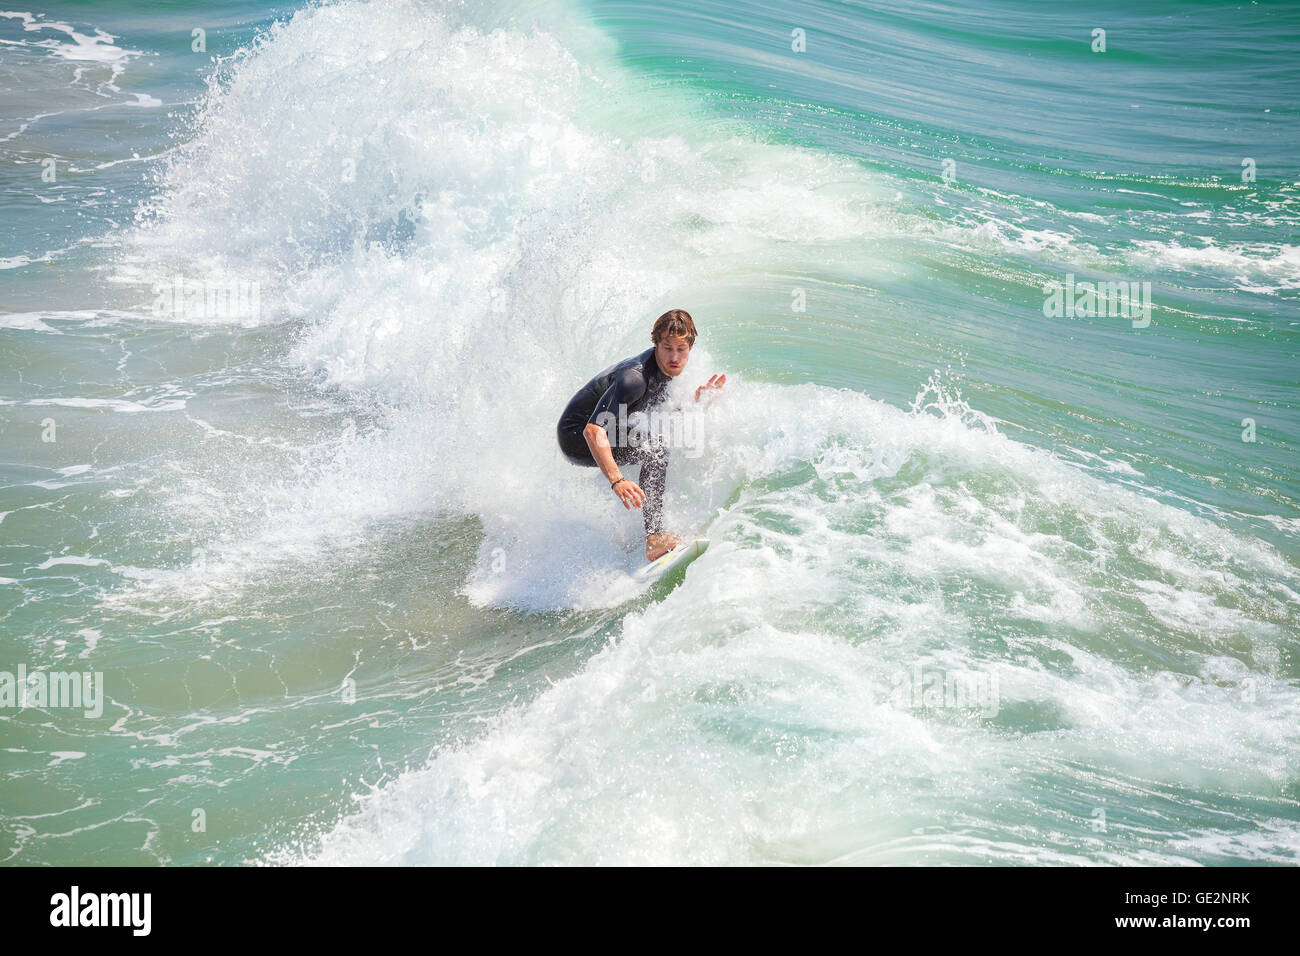 Venice Beach, Los Angeles, USA - Agosto 22, 2015: Surfer cabalgando onda en un hermoso día soleado. Foto de stock